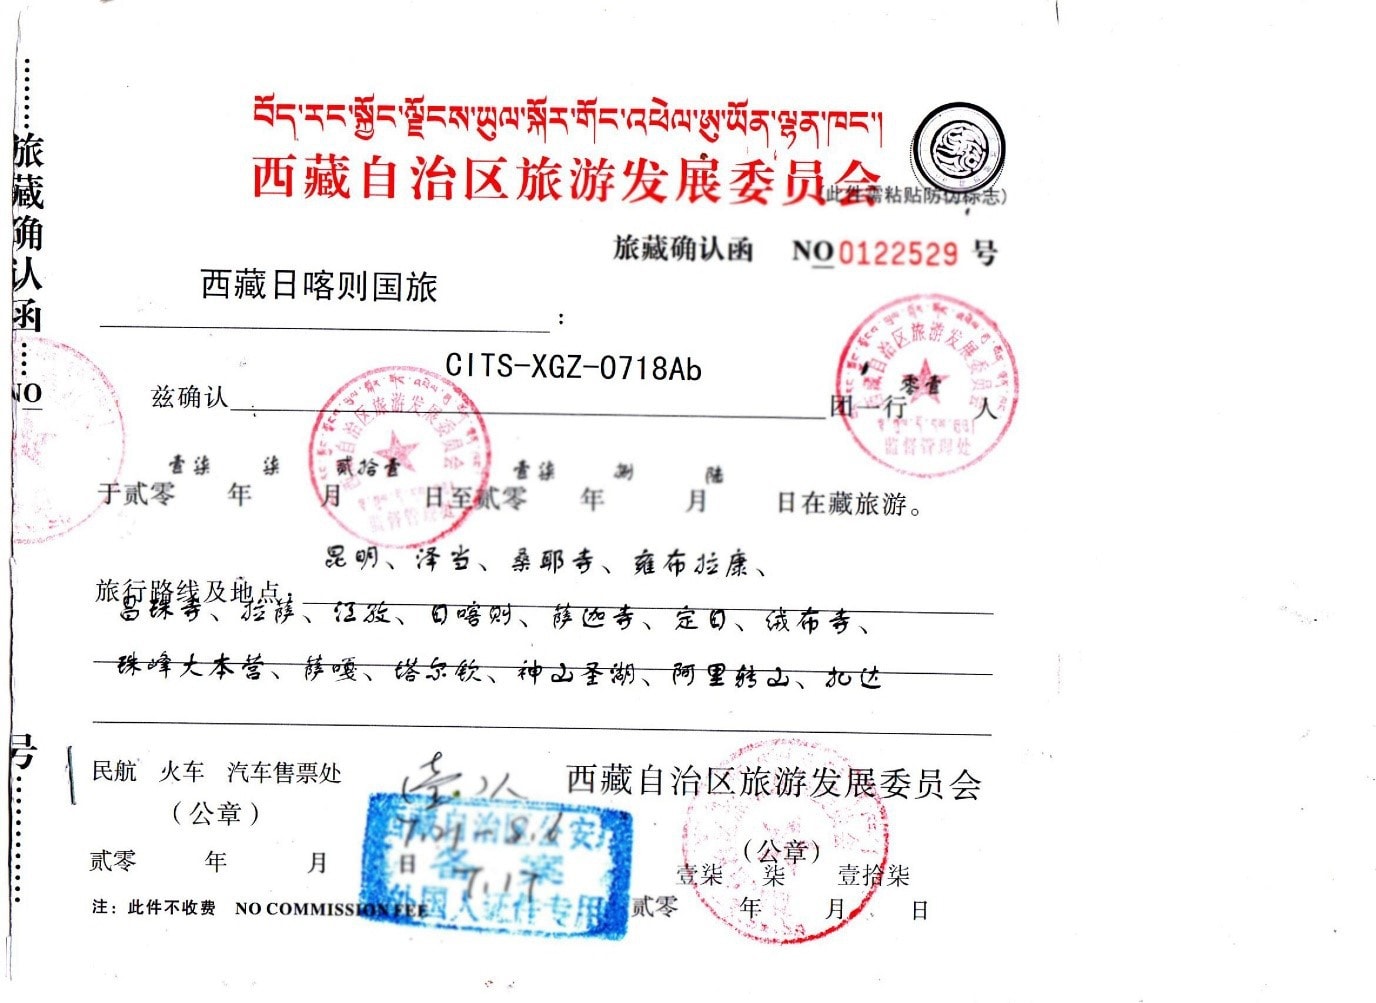 Tibet Travel Documents